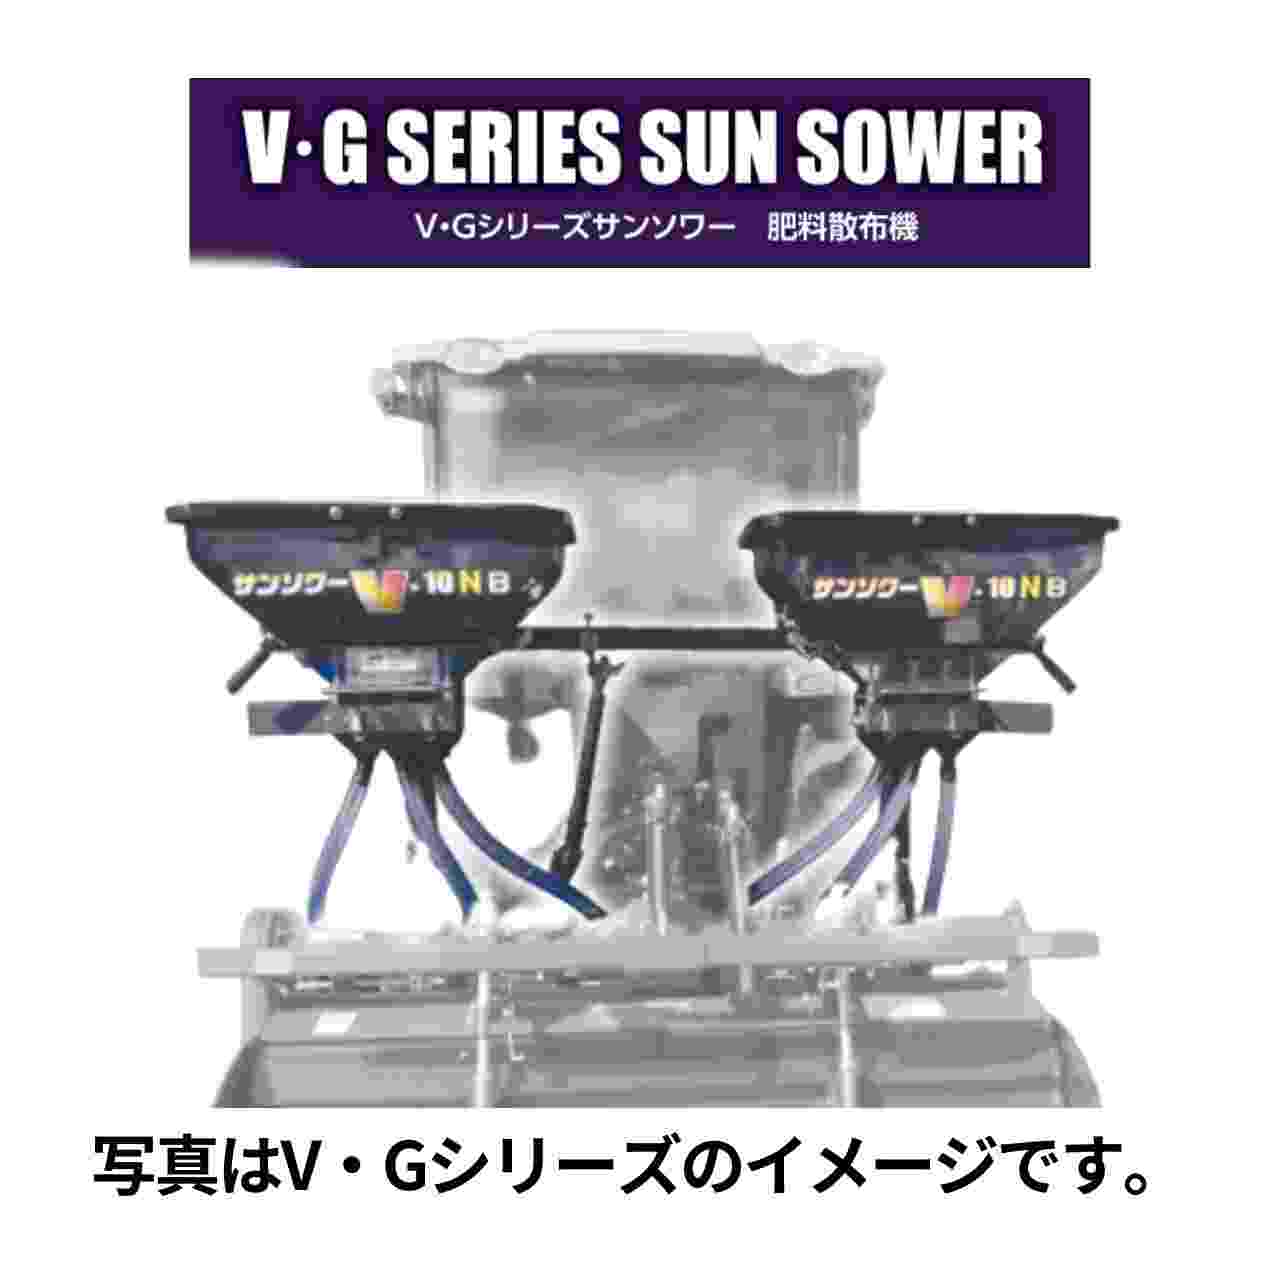 トラクタ用施肥機 サンソワーVシリーズ ジョーニシ V-F10N｜農機具通販ノウキナビ